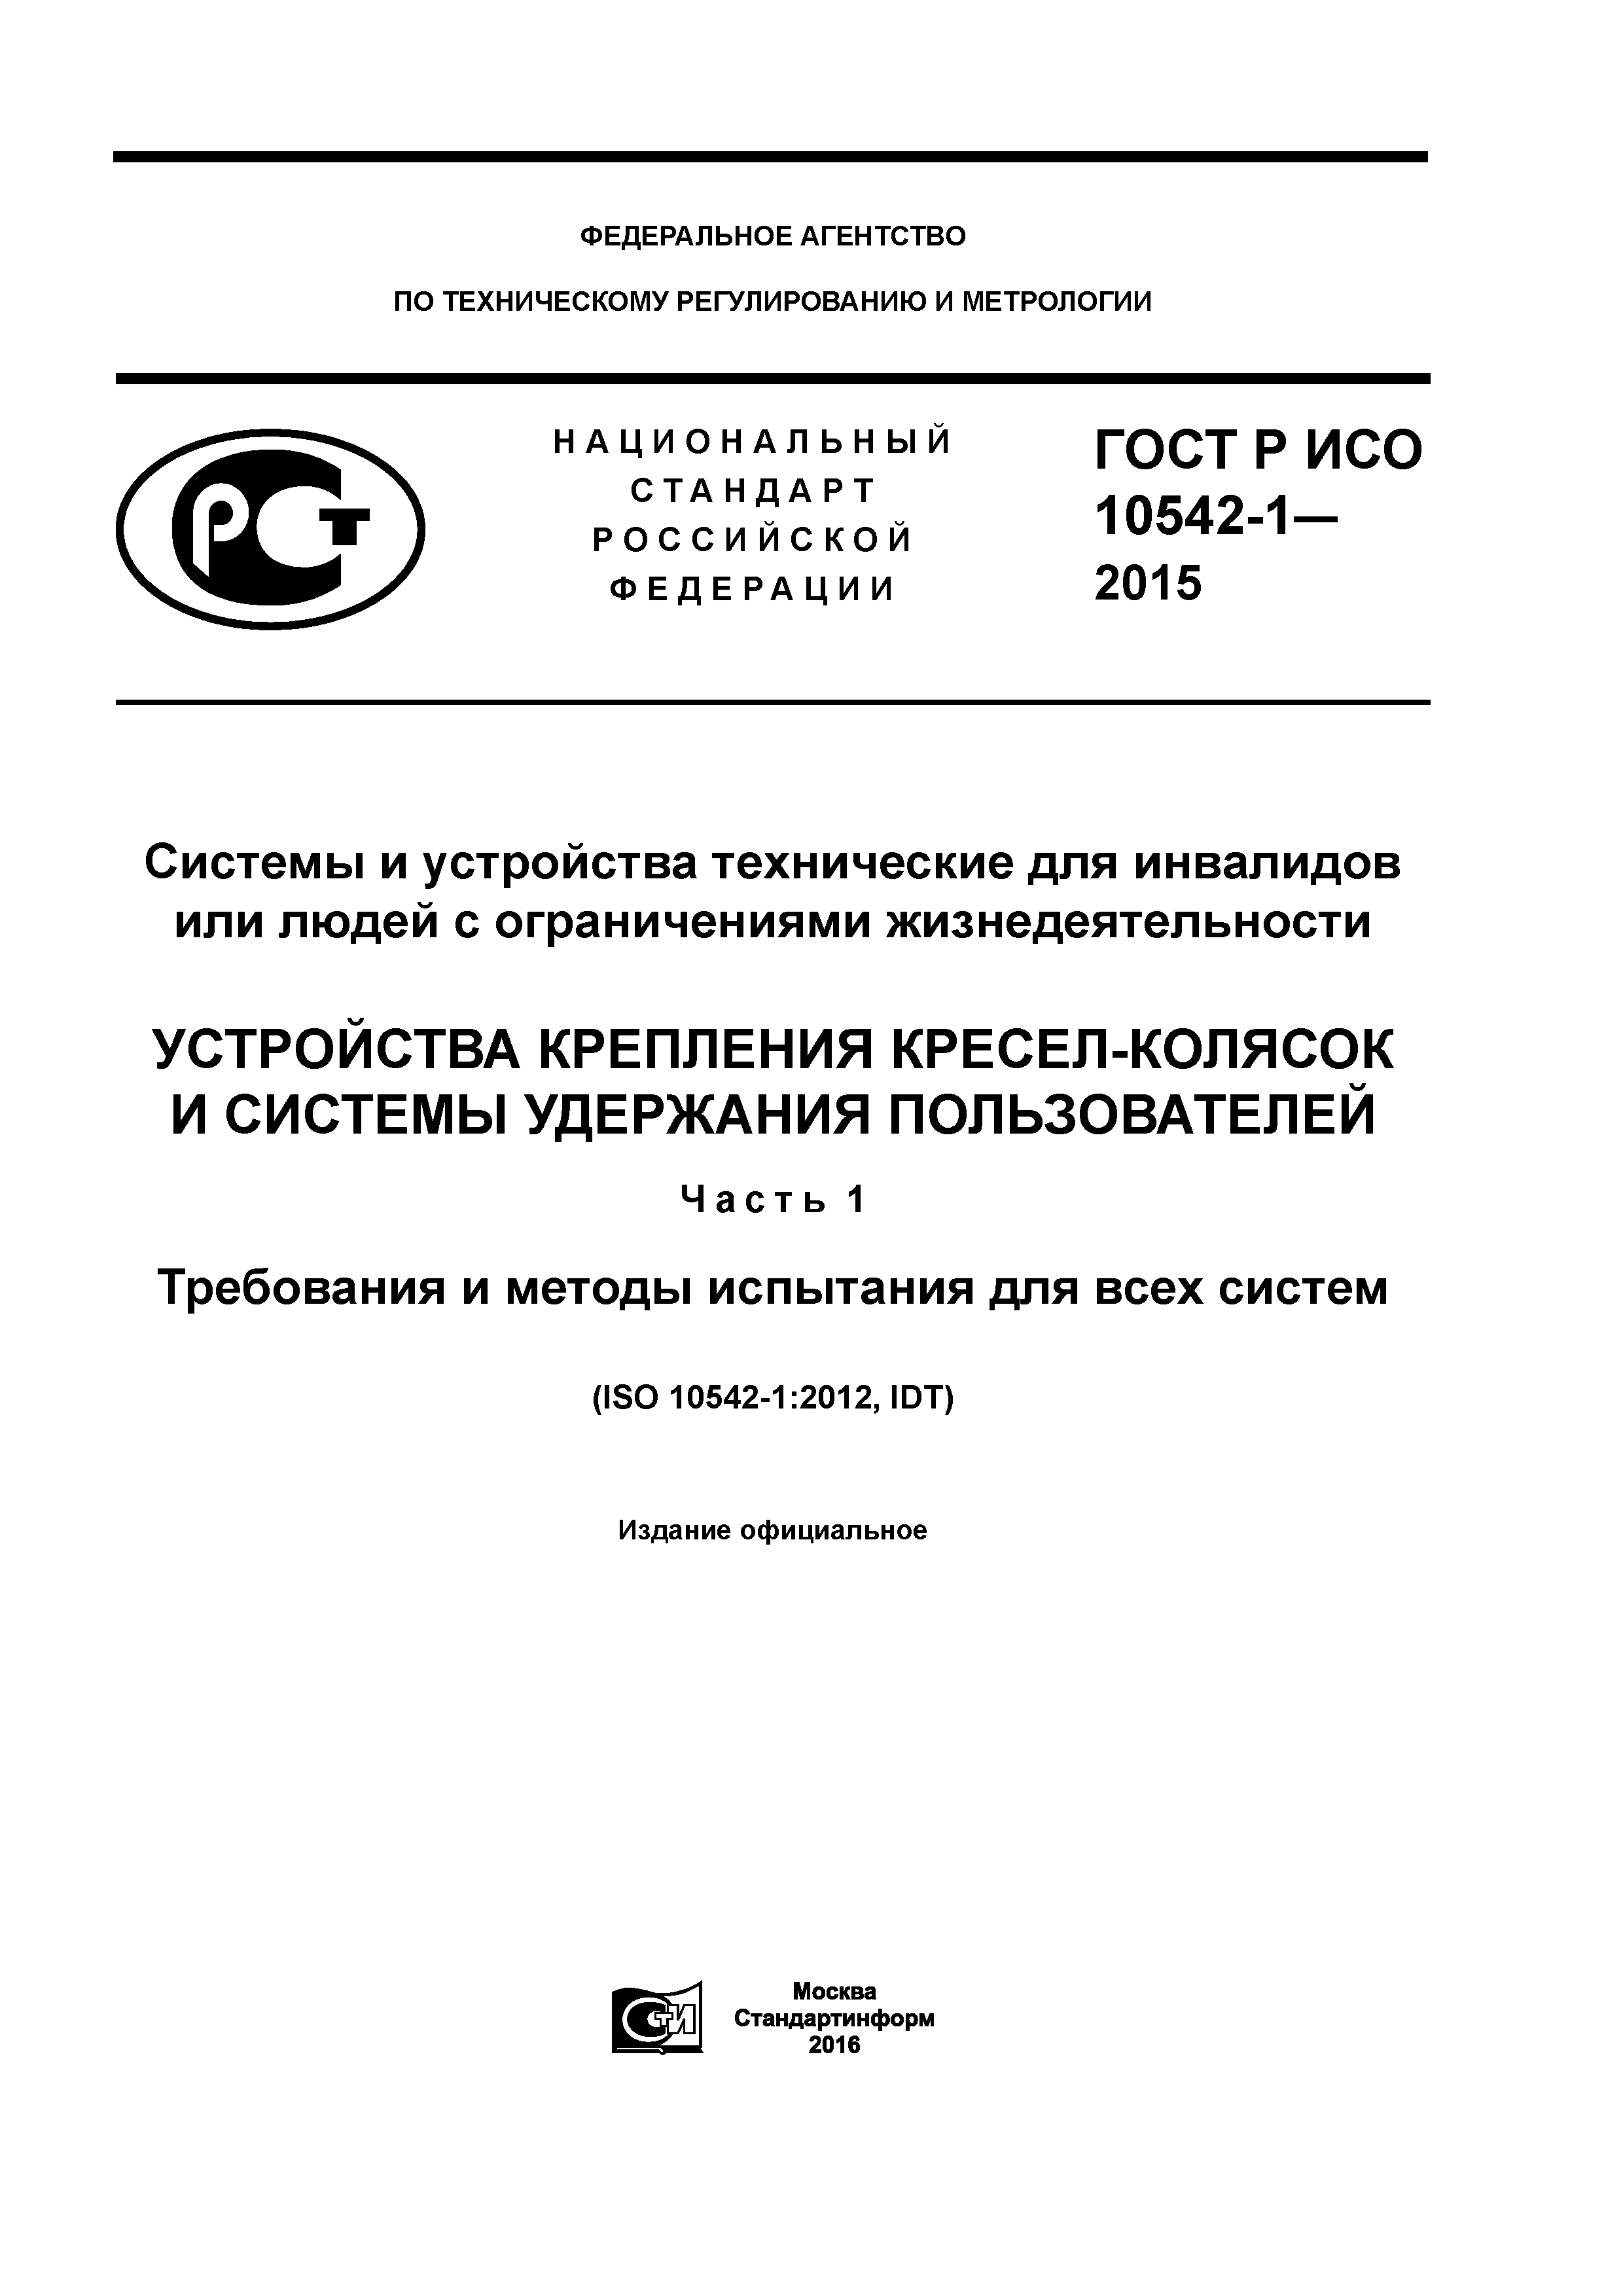 ГОСТ Р ИСО 10542-1-2015